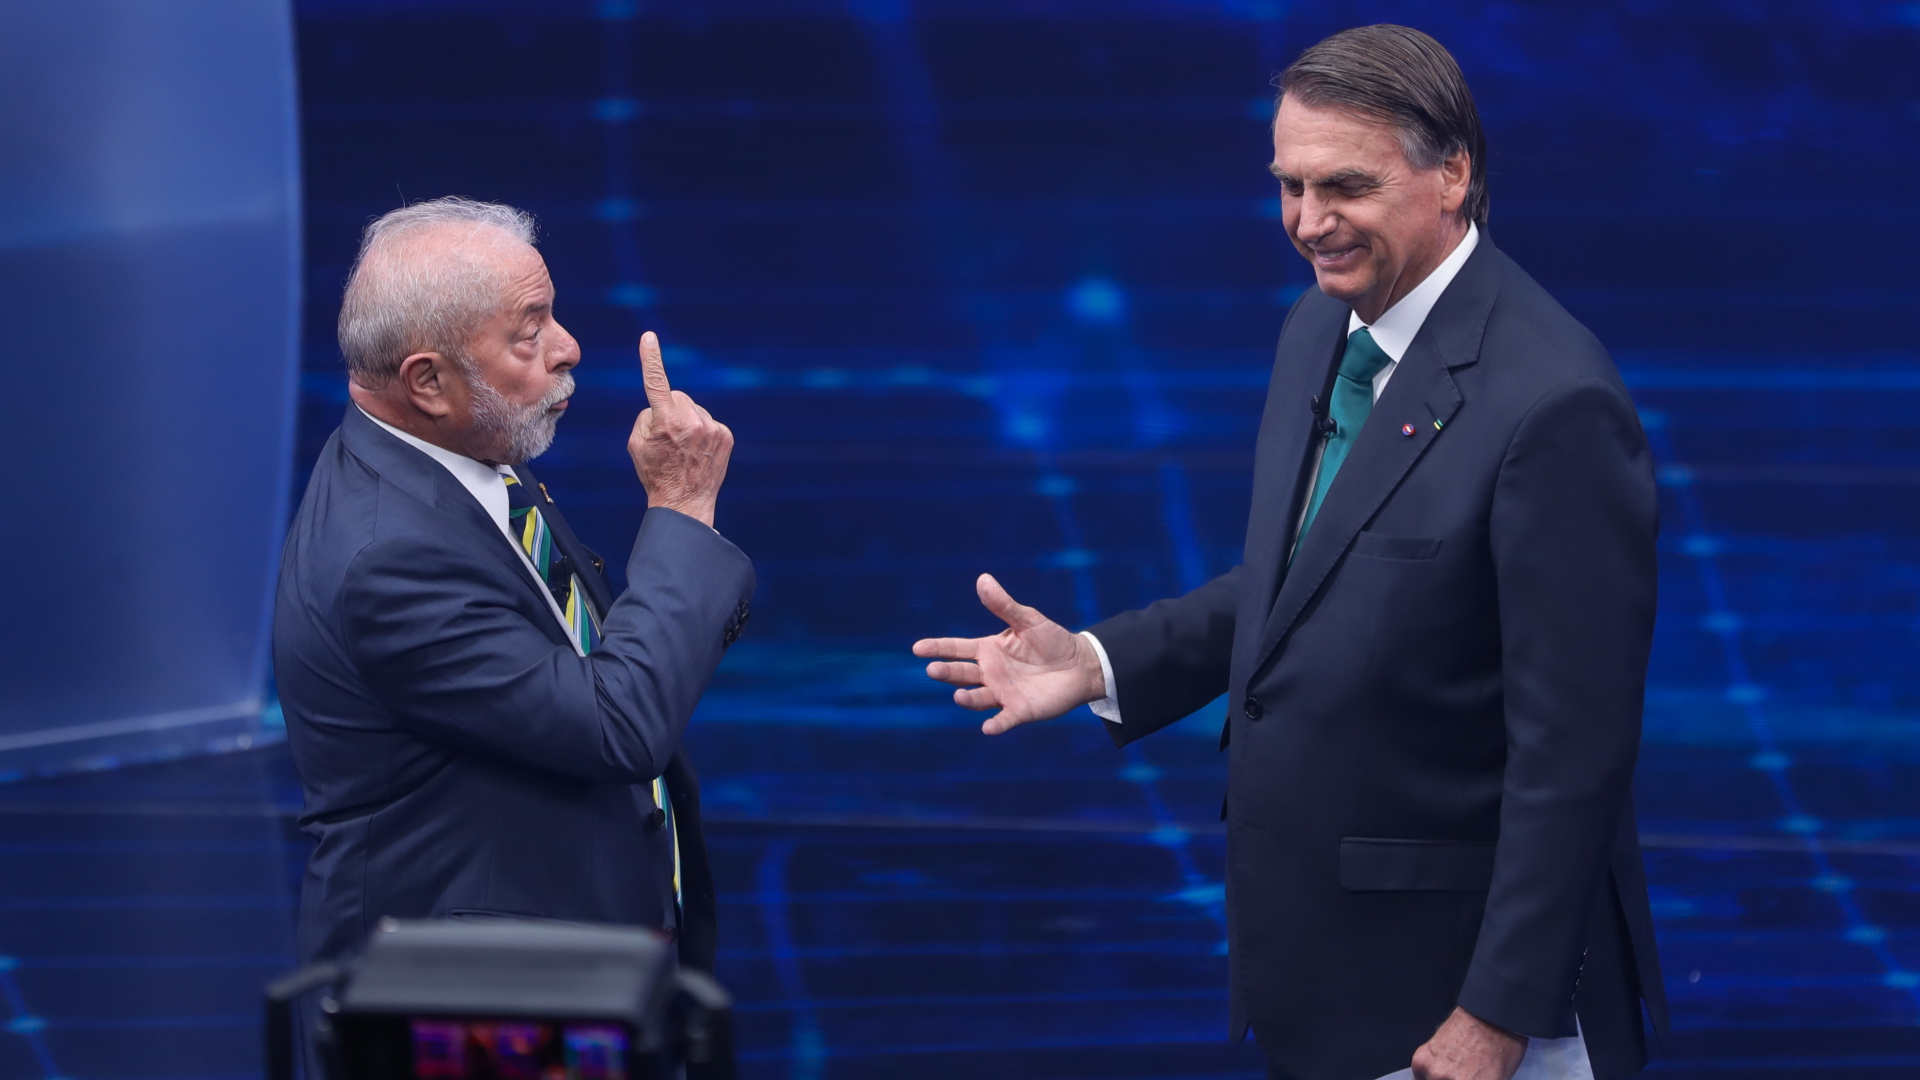  Brasiliens ehemaliger Präsident Luiz Inacio Lula da Silva (l), der erneut für das Amt kandidiert, steht neben Jair Bolsonaro, Präsident von Brasilien, in einer Präsidentschaftsdebatte im Fernsehsender Bandeirantes gegenüber. | dpa